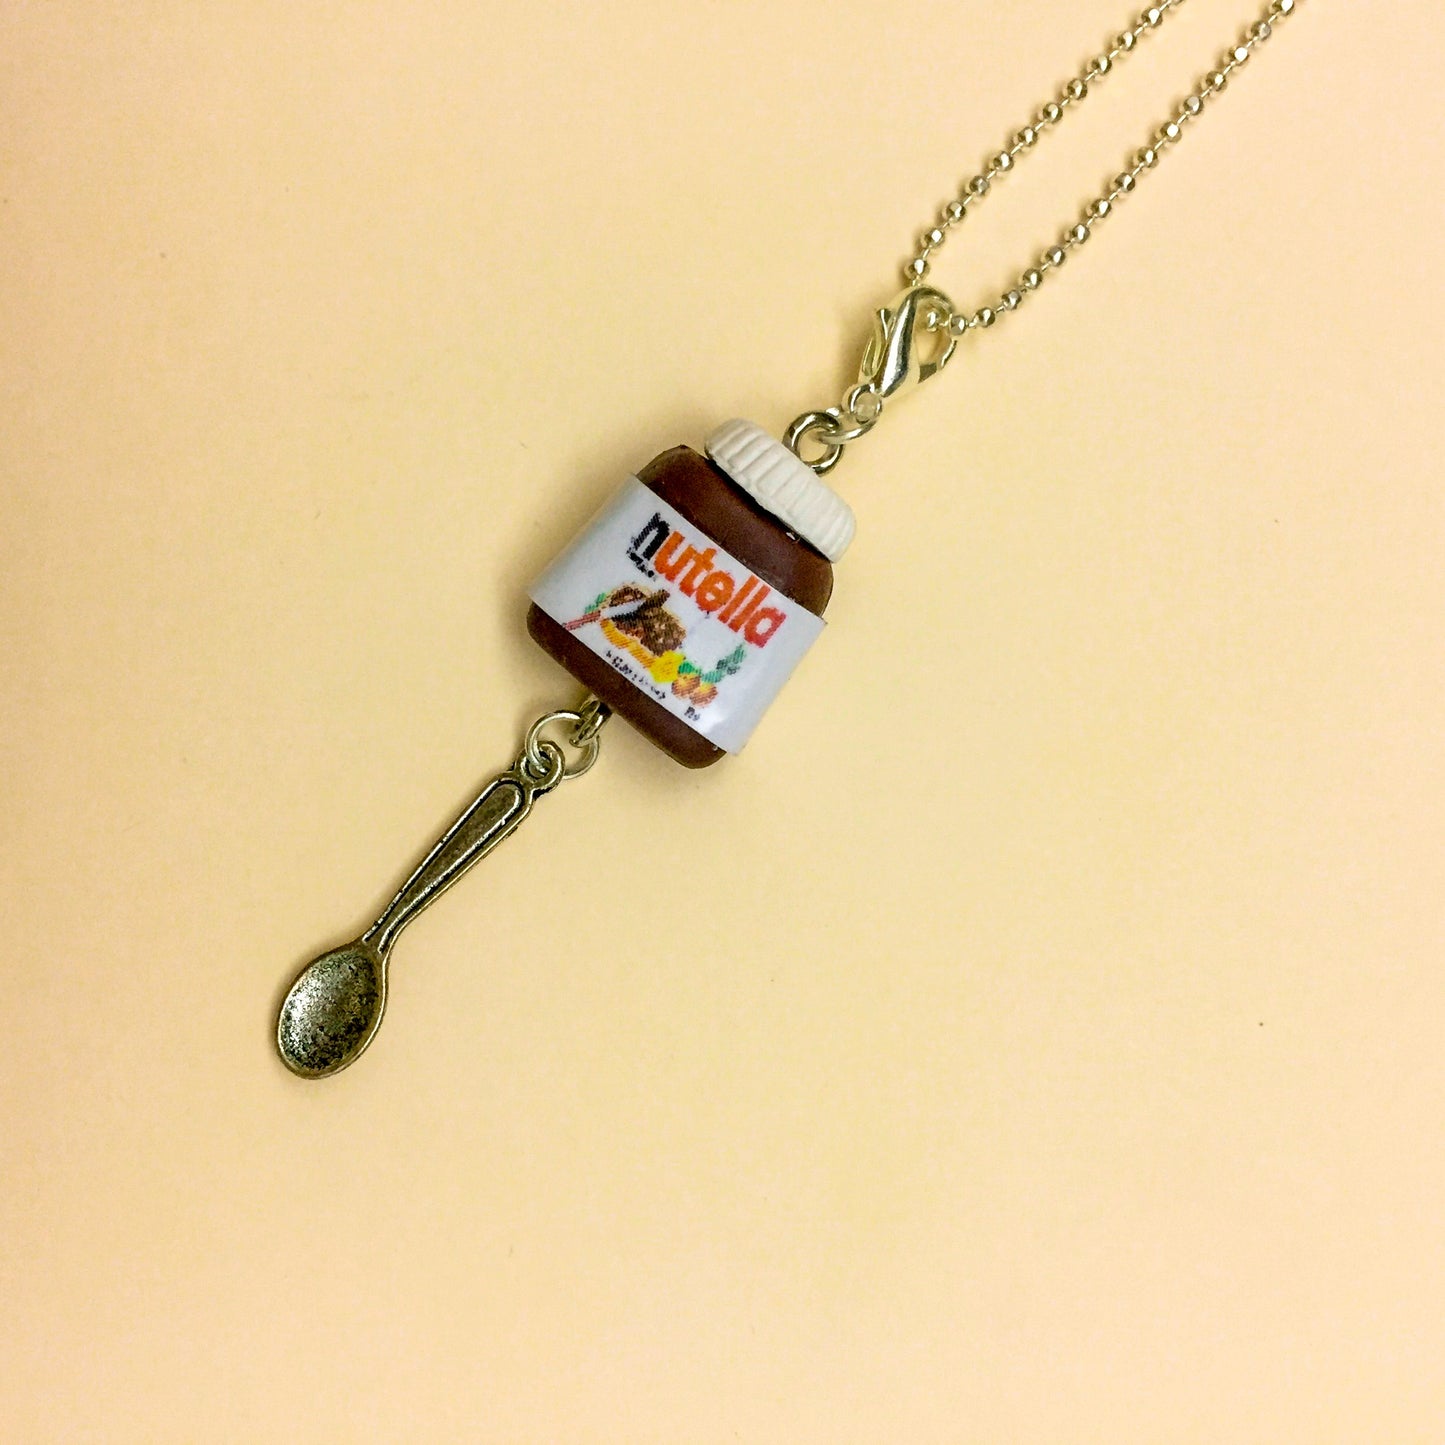 Nutella Bottle Spoon Miniature Charm Pendant Necklace